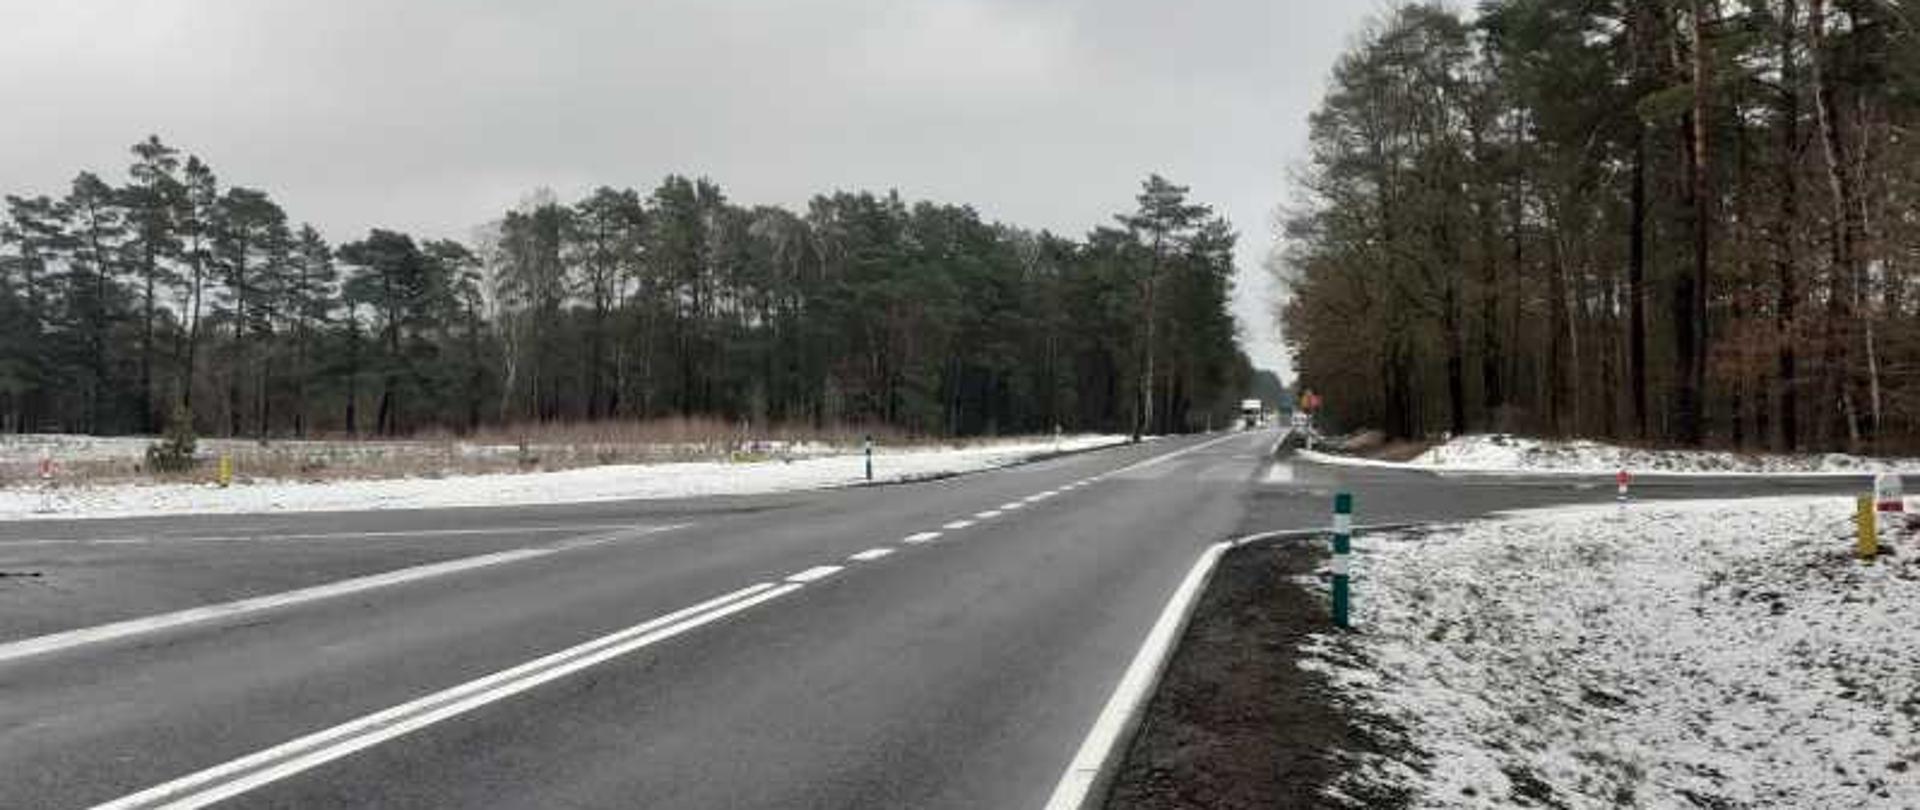 Zdjęcie przedstawia skrzyżowanie drogi krajowej nr 22 z drogą powiatową Kołczyn Sulęcin